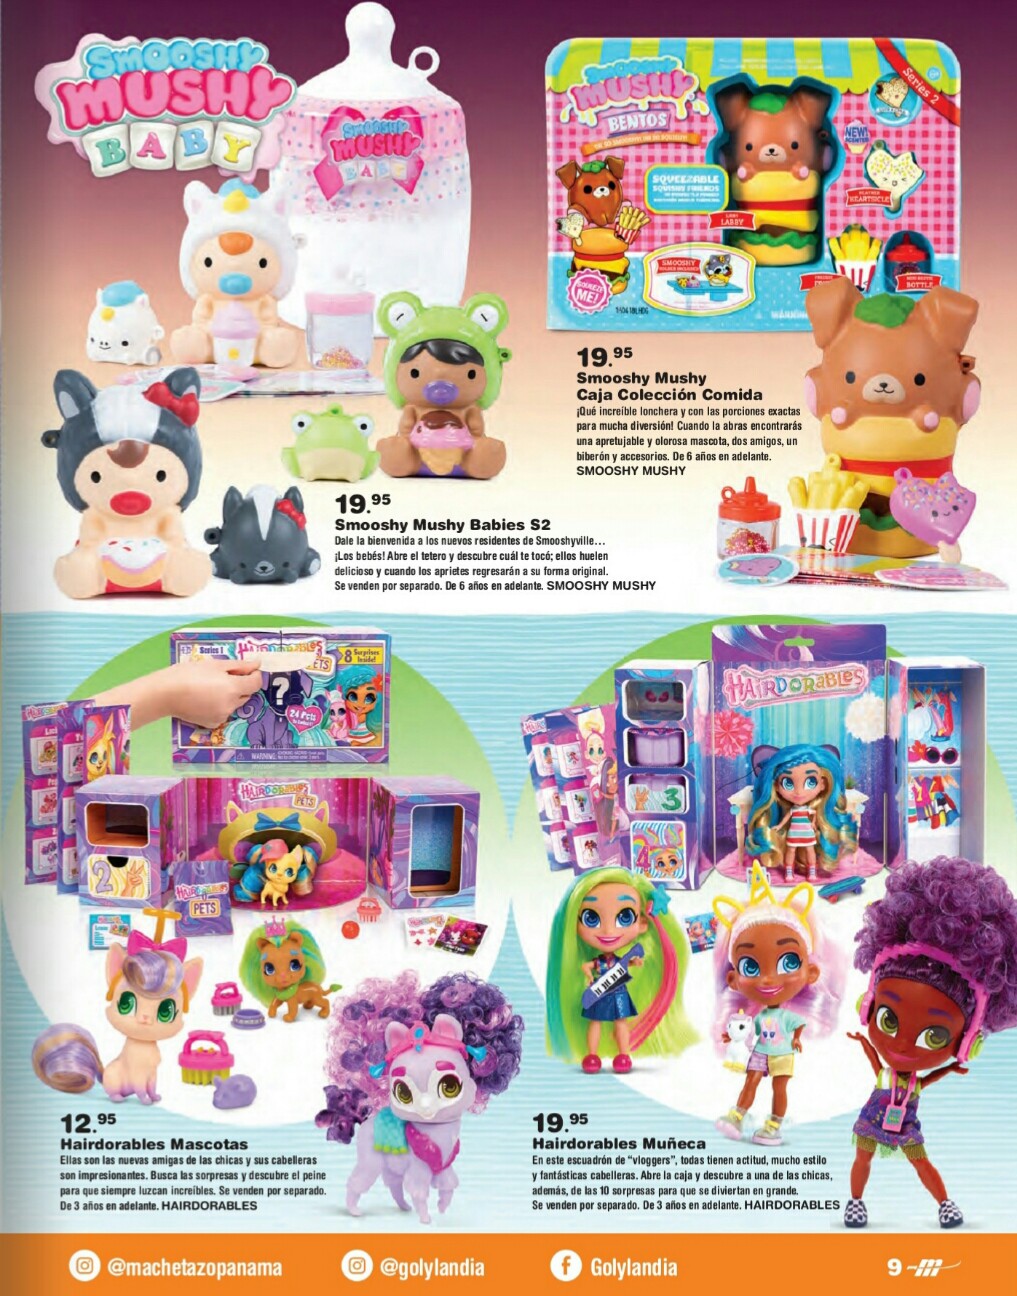 Catalogo juguetes el Machetazo 2019 p9